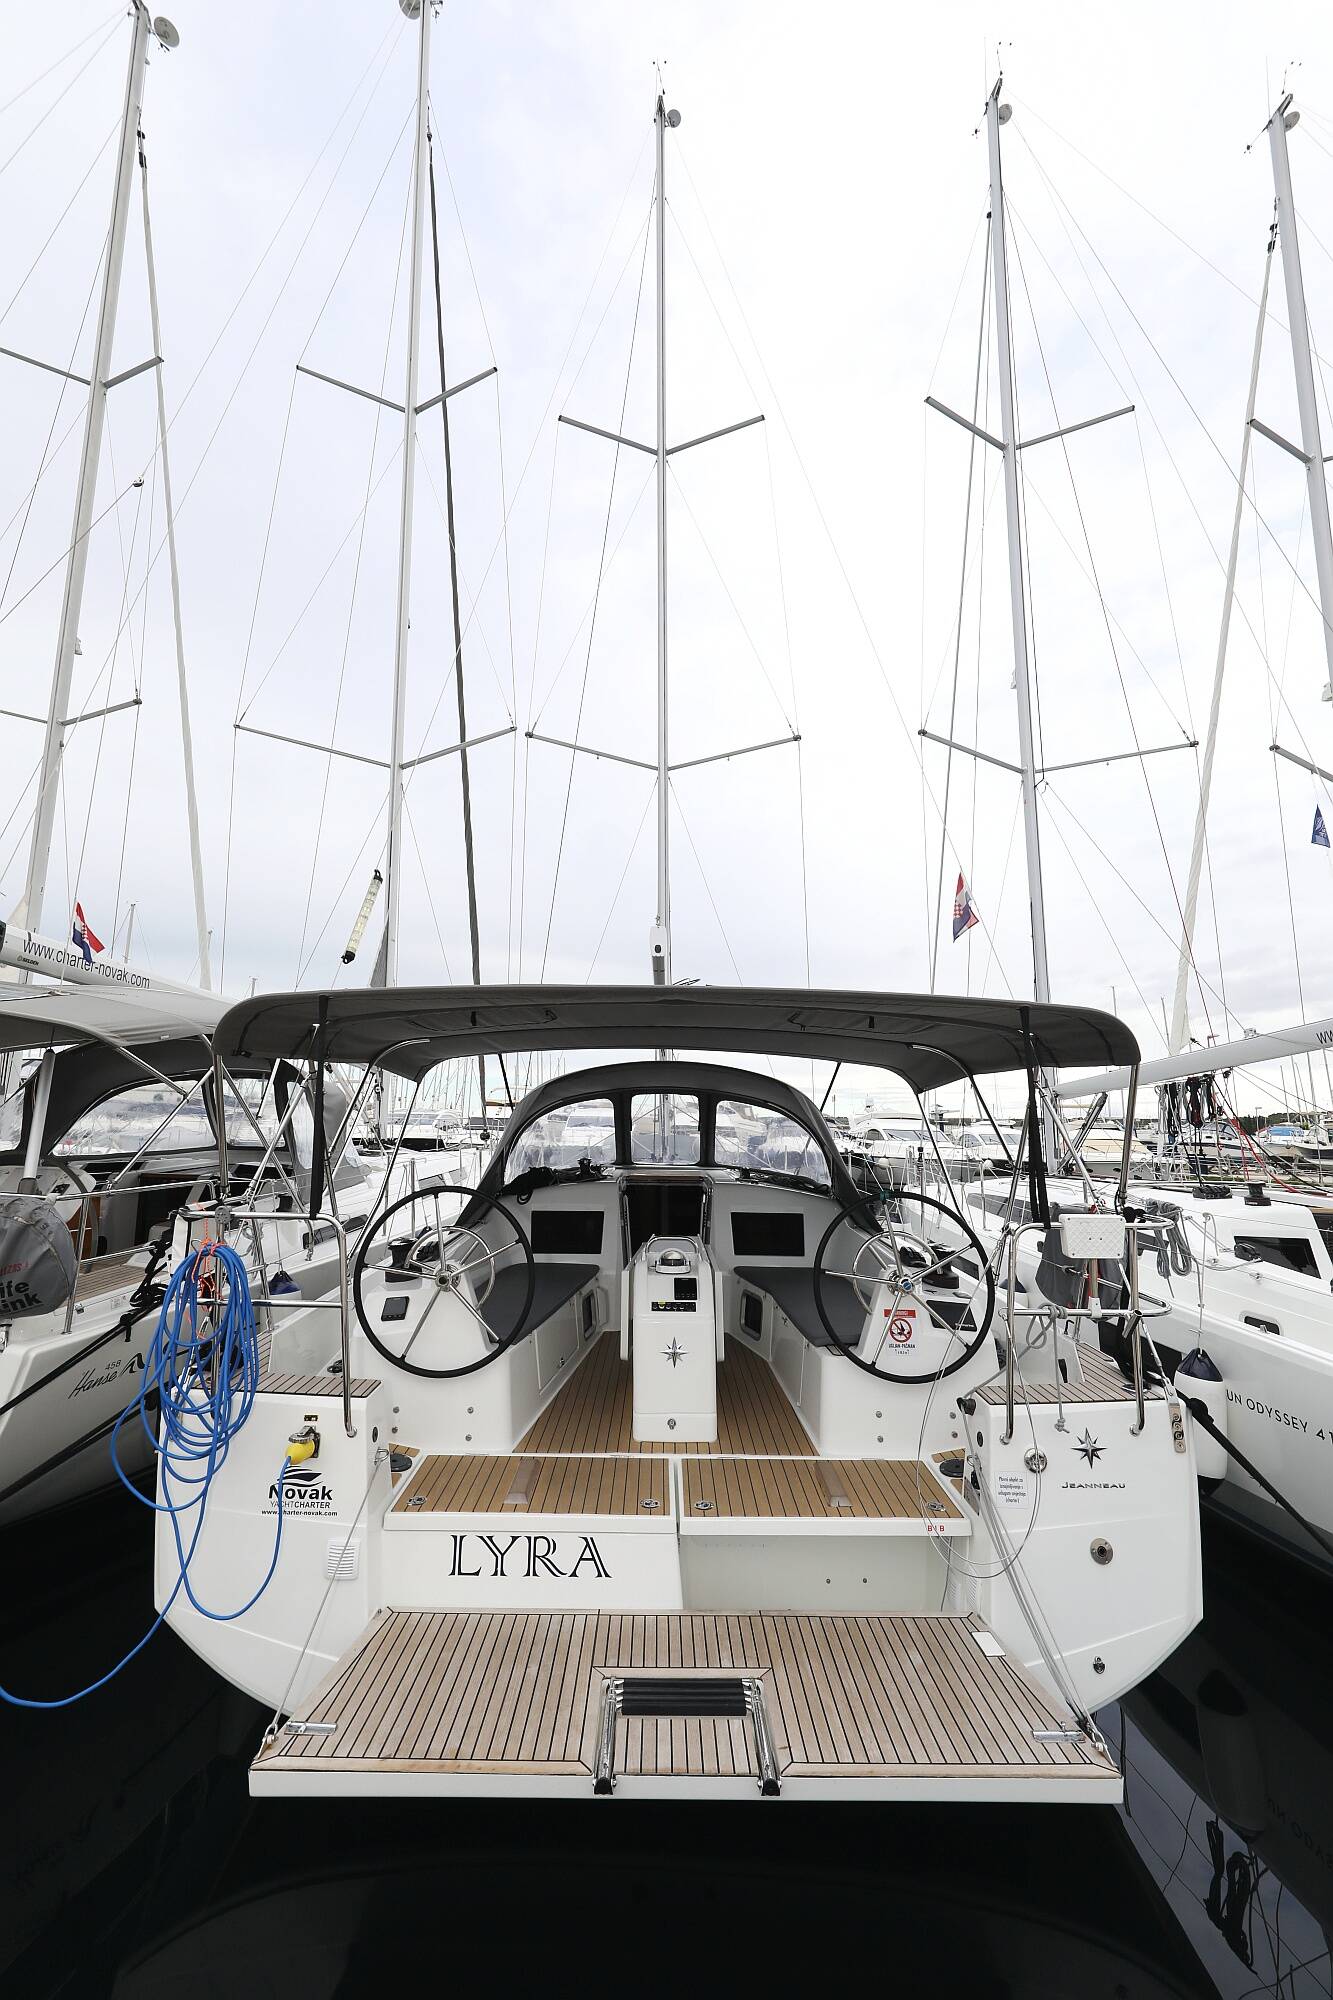 Sun Odyssey 410, Lyra